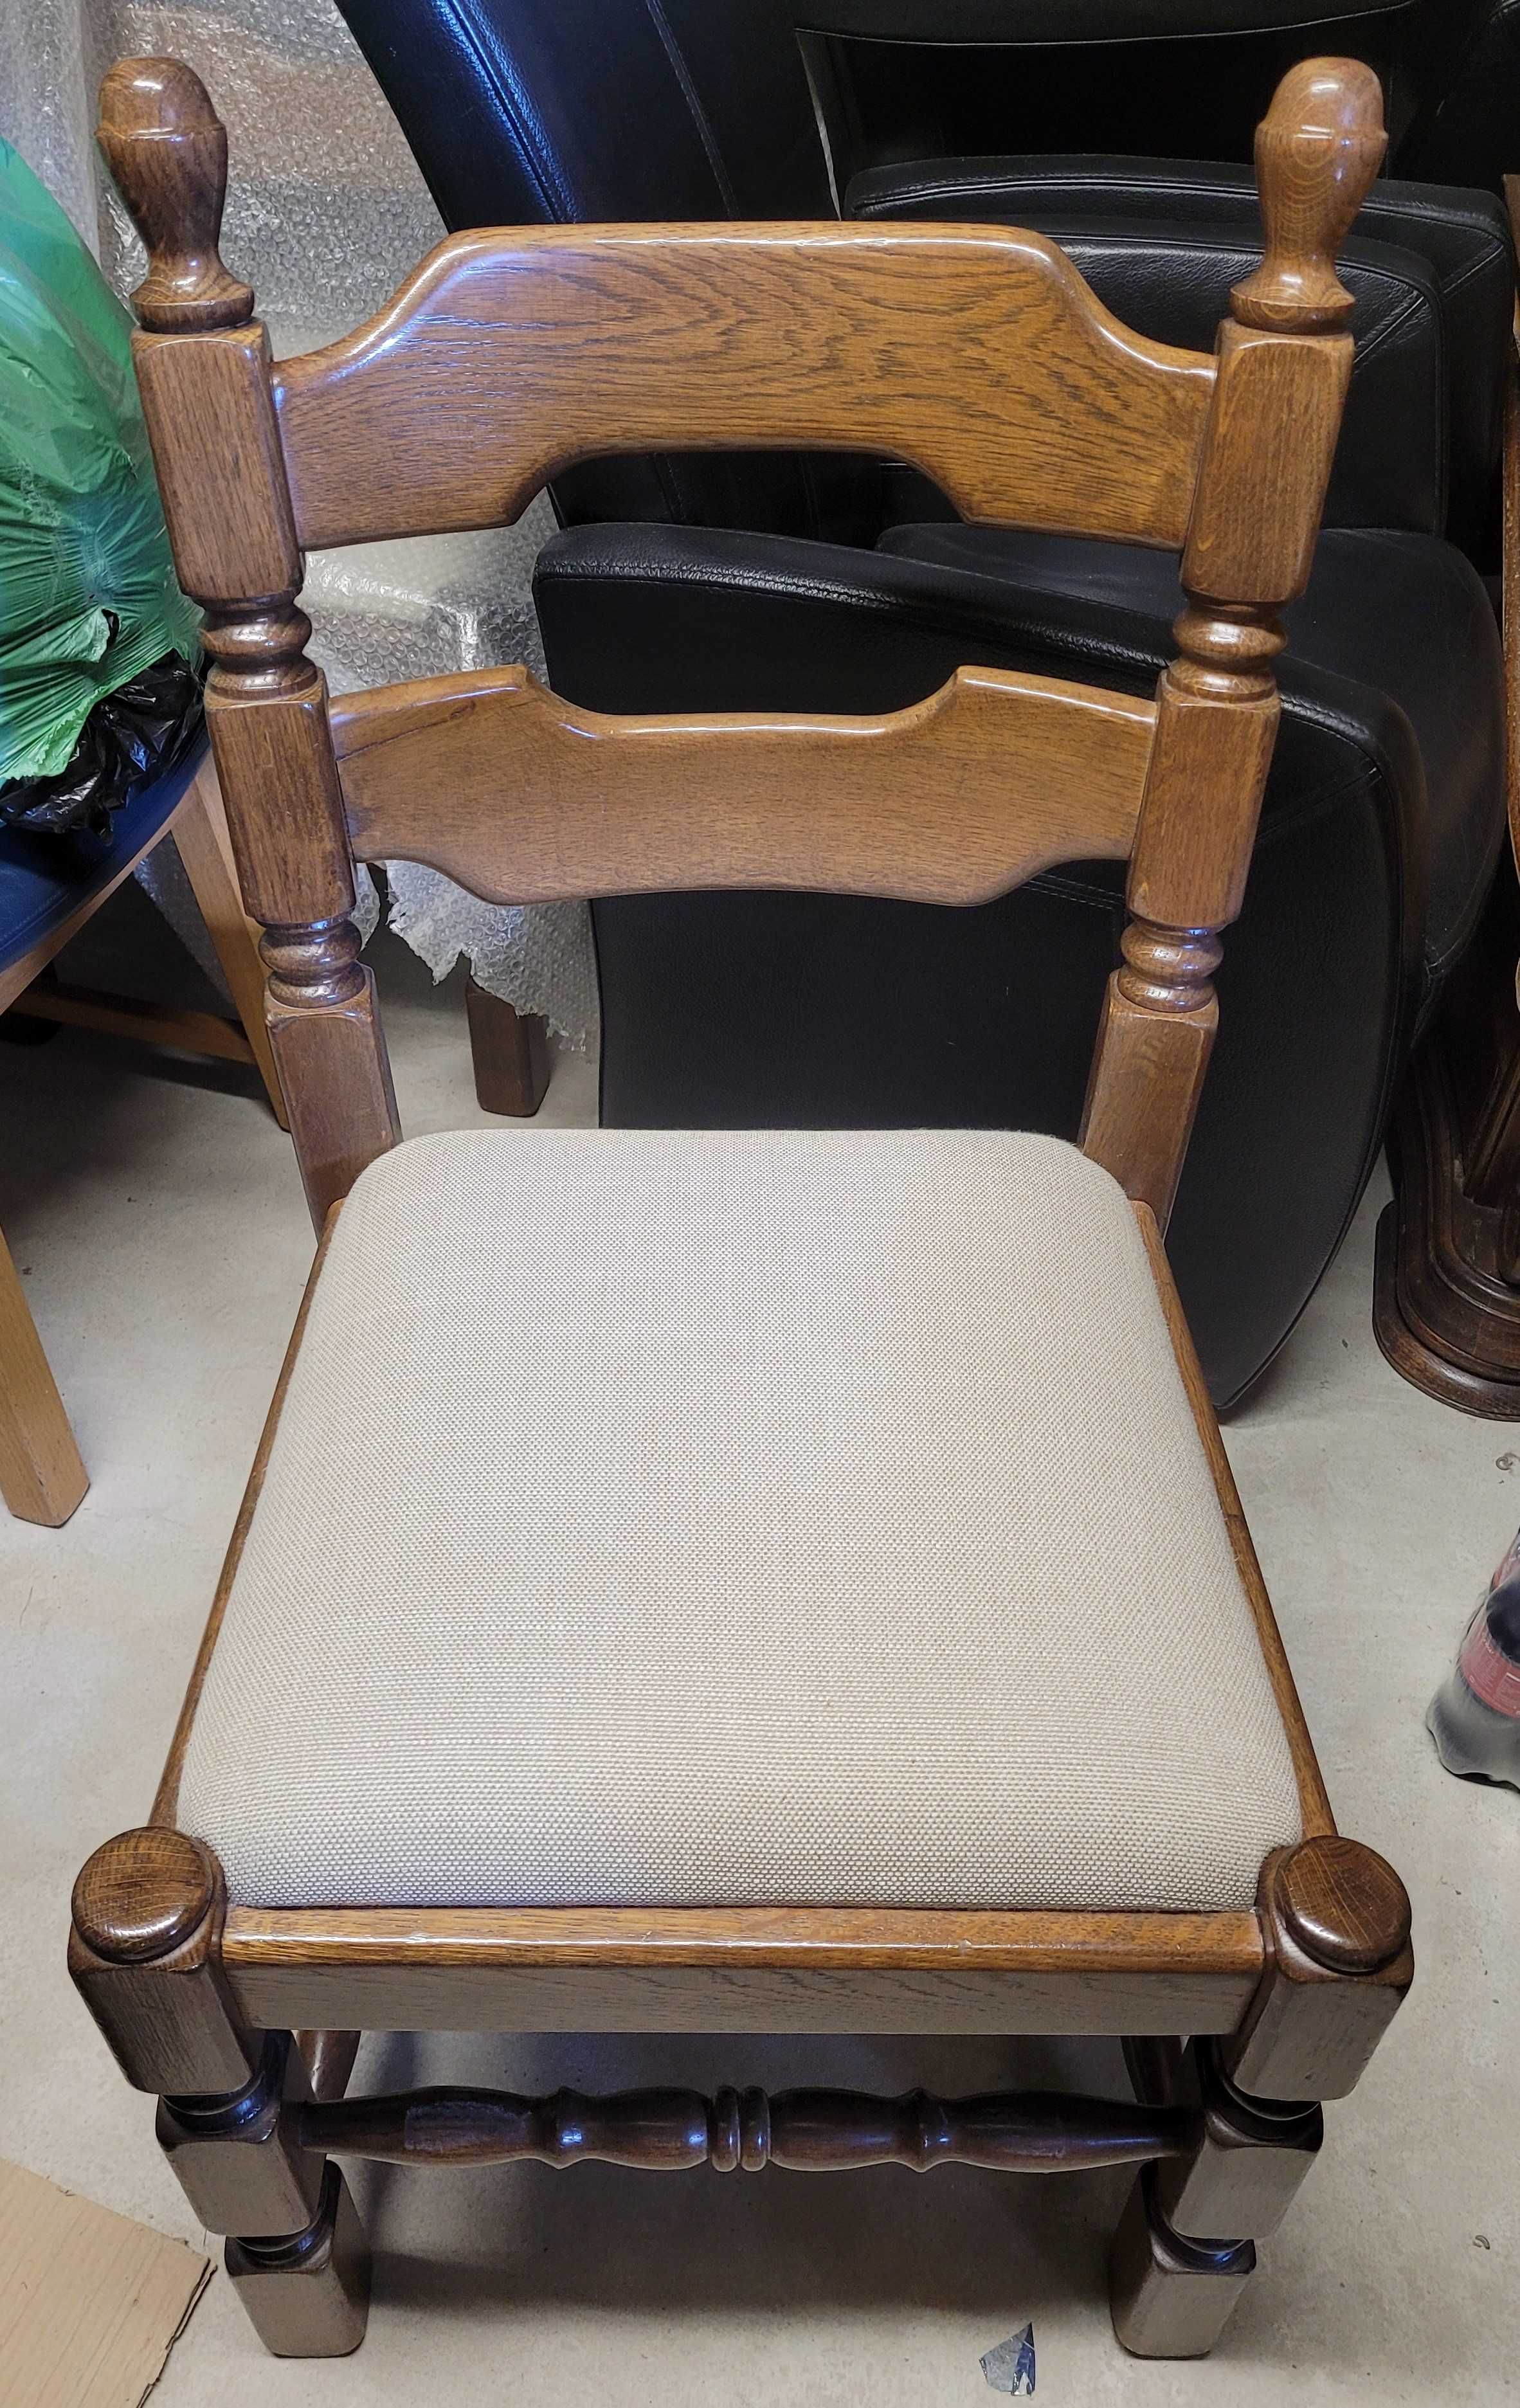 Krzesła dębowe. Stabilne i wygodne.